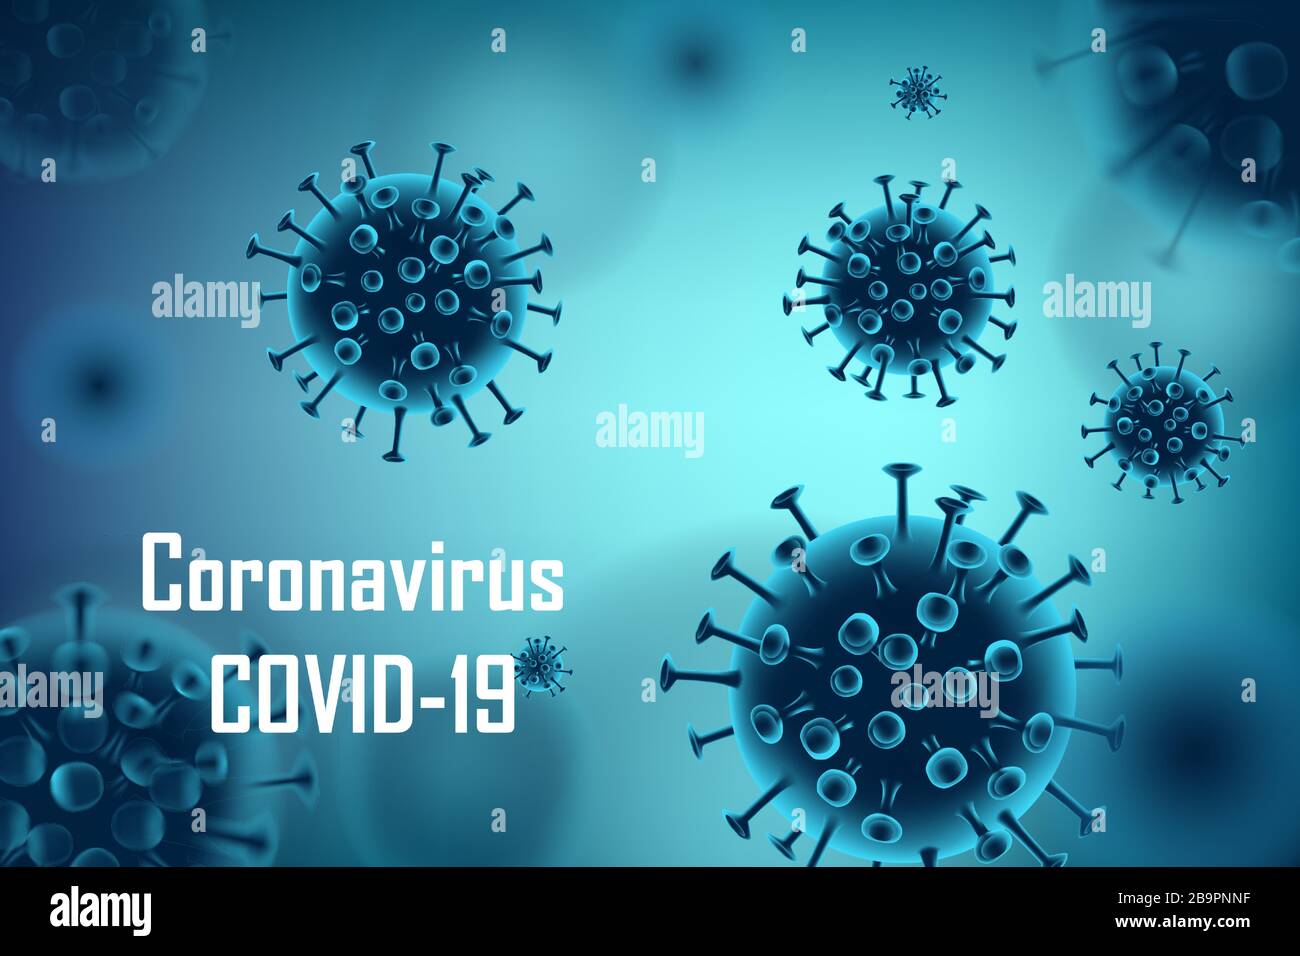 Realistischer Hintergrund des medizinischen Ausbruchs des Coronavirus. Pandemic Coronavirus 2019-nCoV Anzeigenkonzept Bannerdesign. Vektorgrafiken für Viruszellen. Stock Vektor